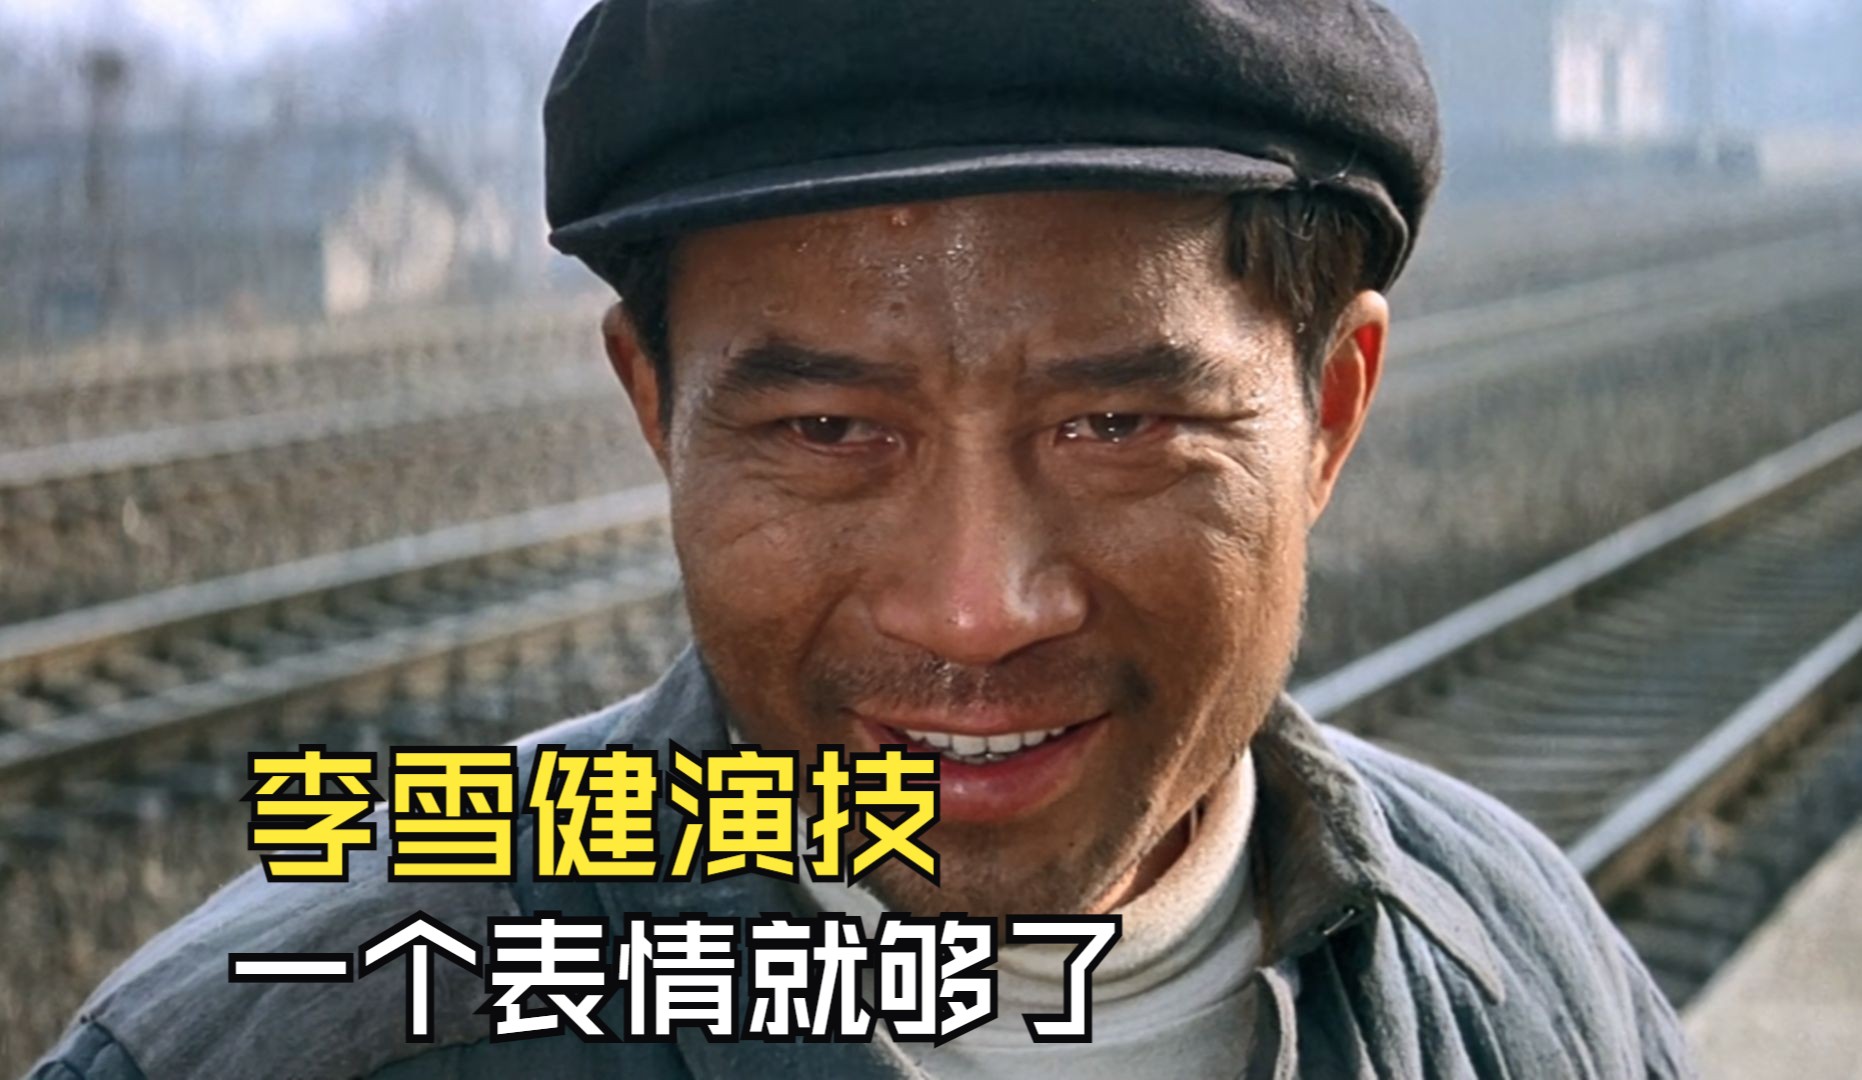 李雪健最经典的影片,也是他的代表角色,不愧是中国顶级演员